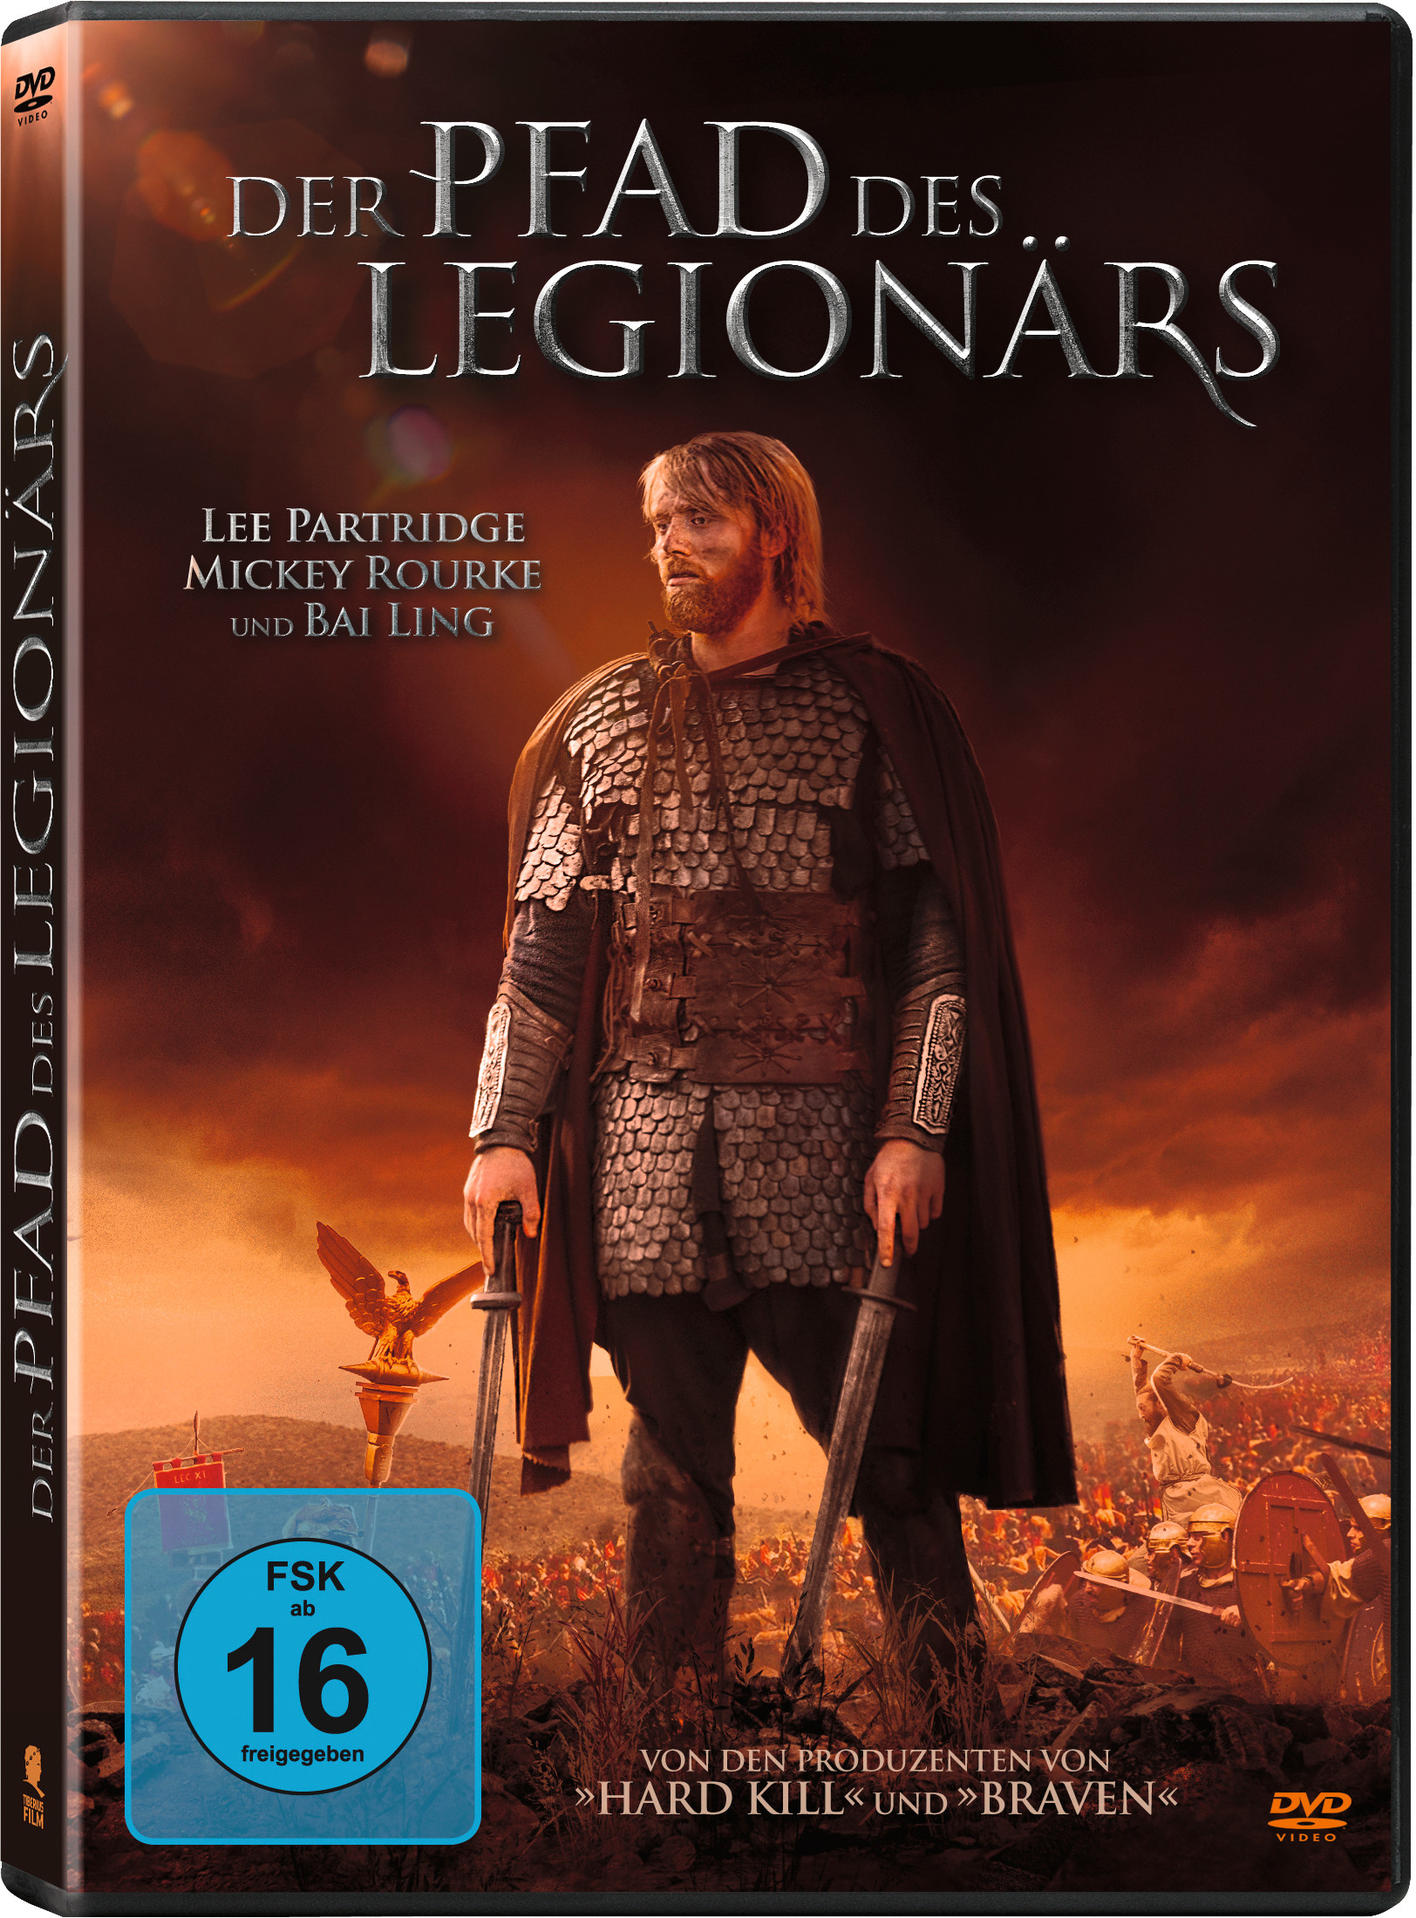 des Legionärs Pfad DVD Der